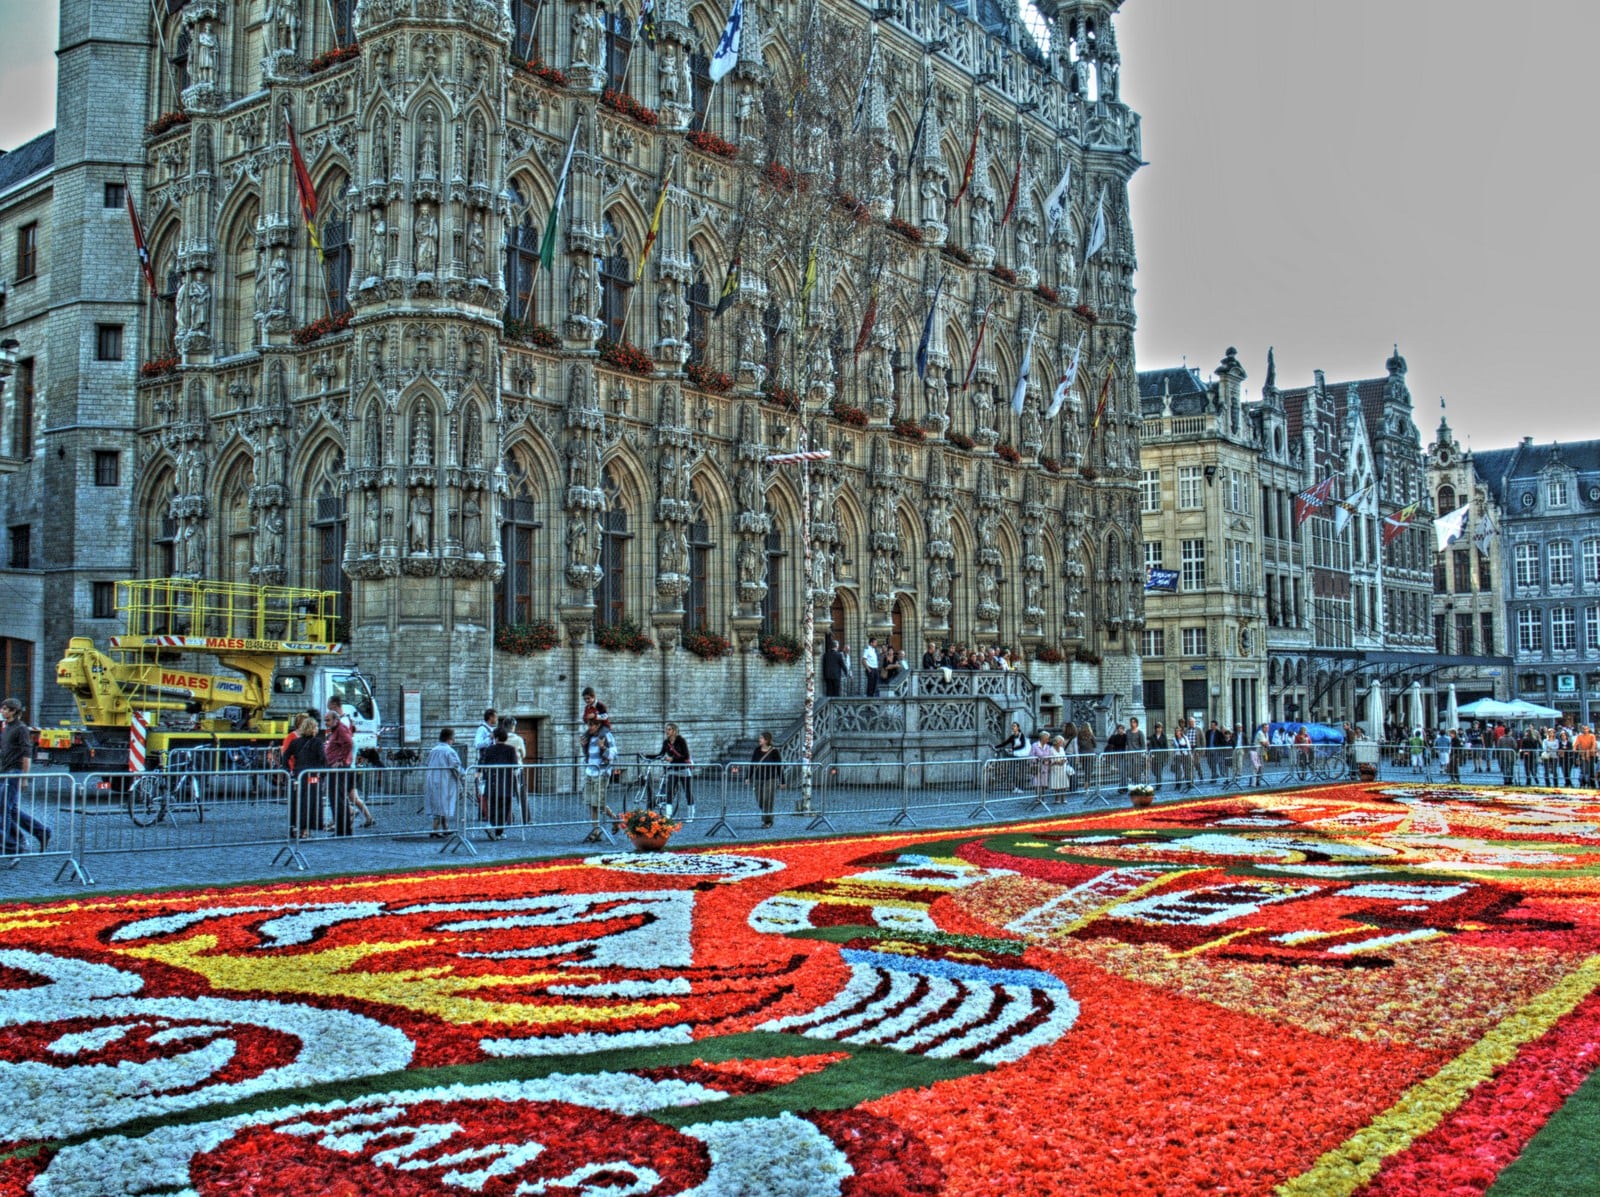 Flower carpet in Leuven